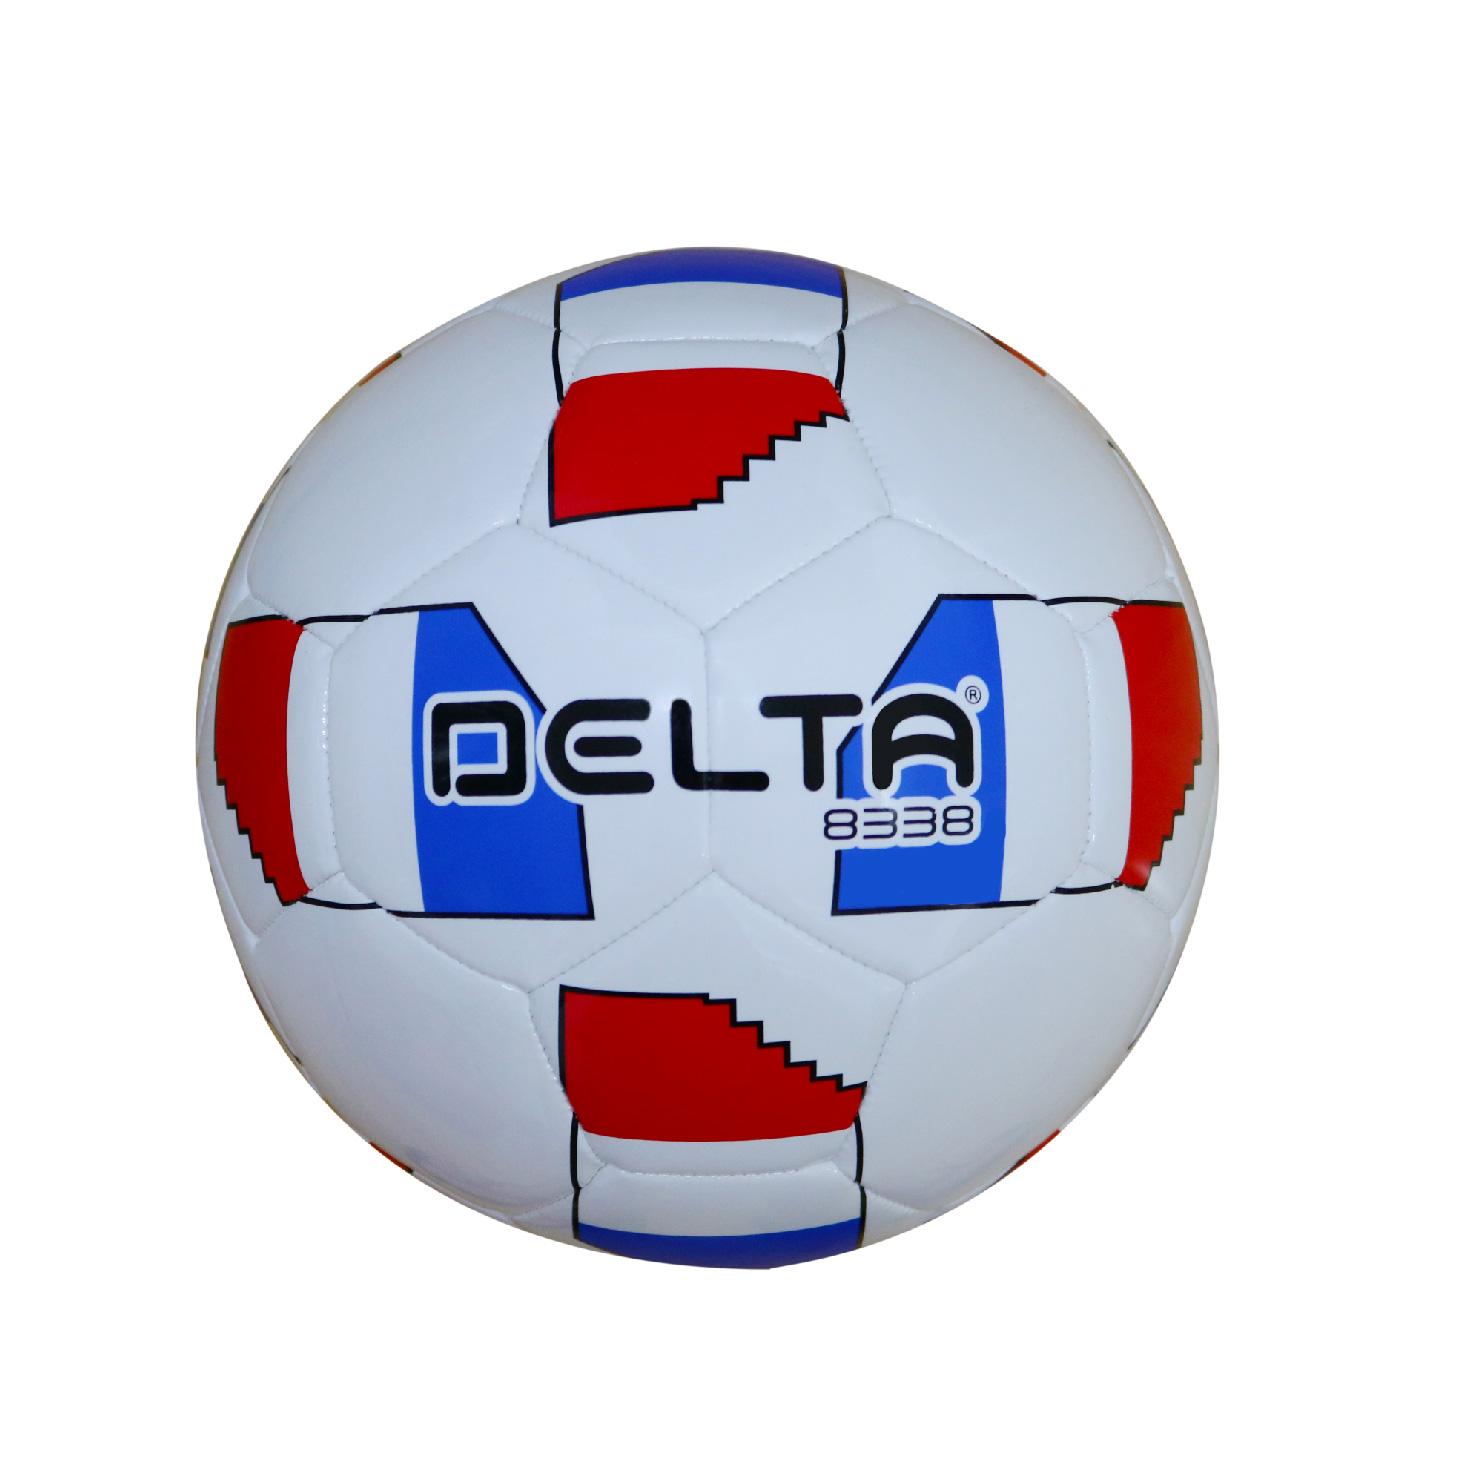 Bóng Delta 8338 S5 (Pháp) 3740 - Tặng kèm bộ kim bóng và lưới đựng bóng.